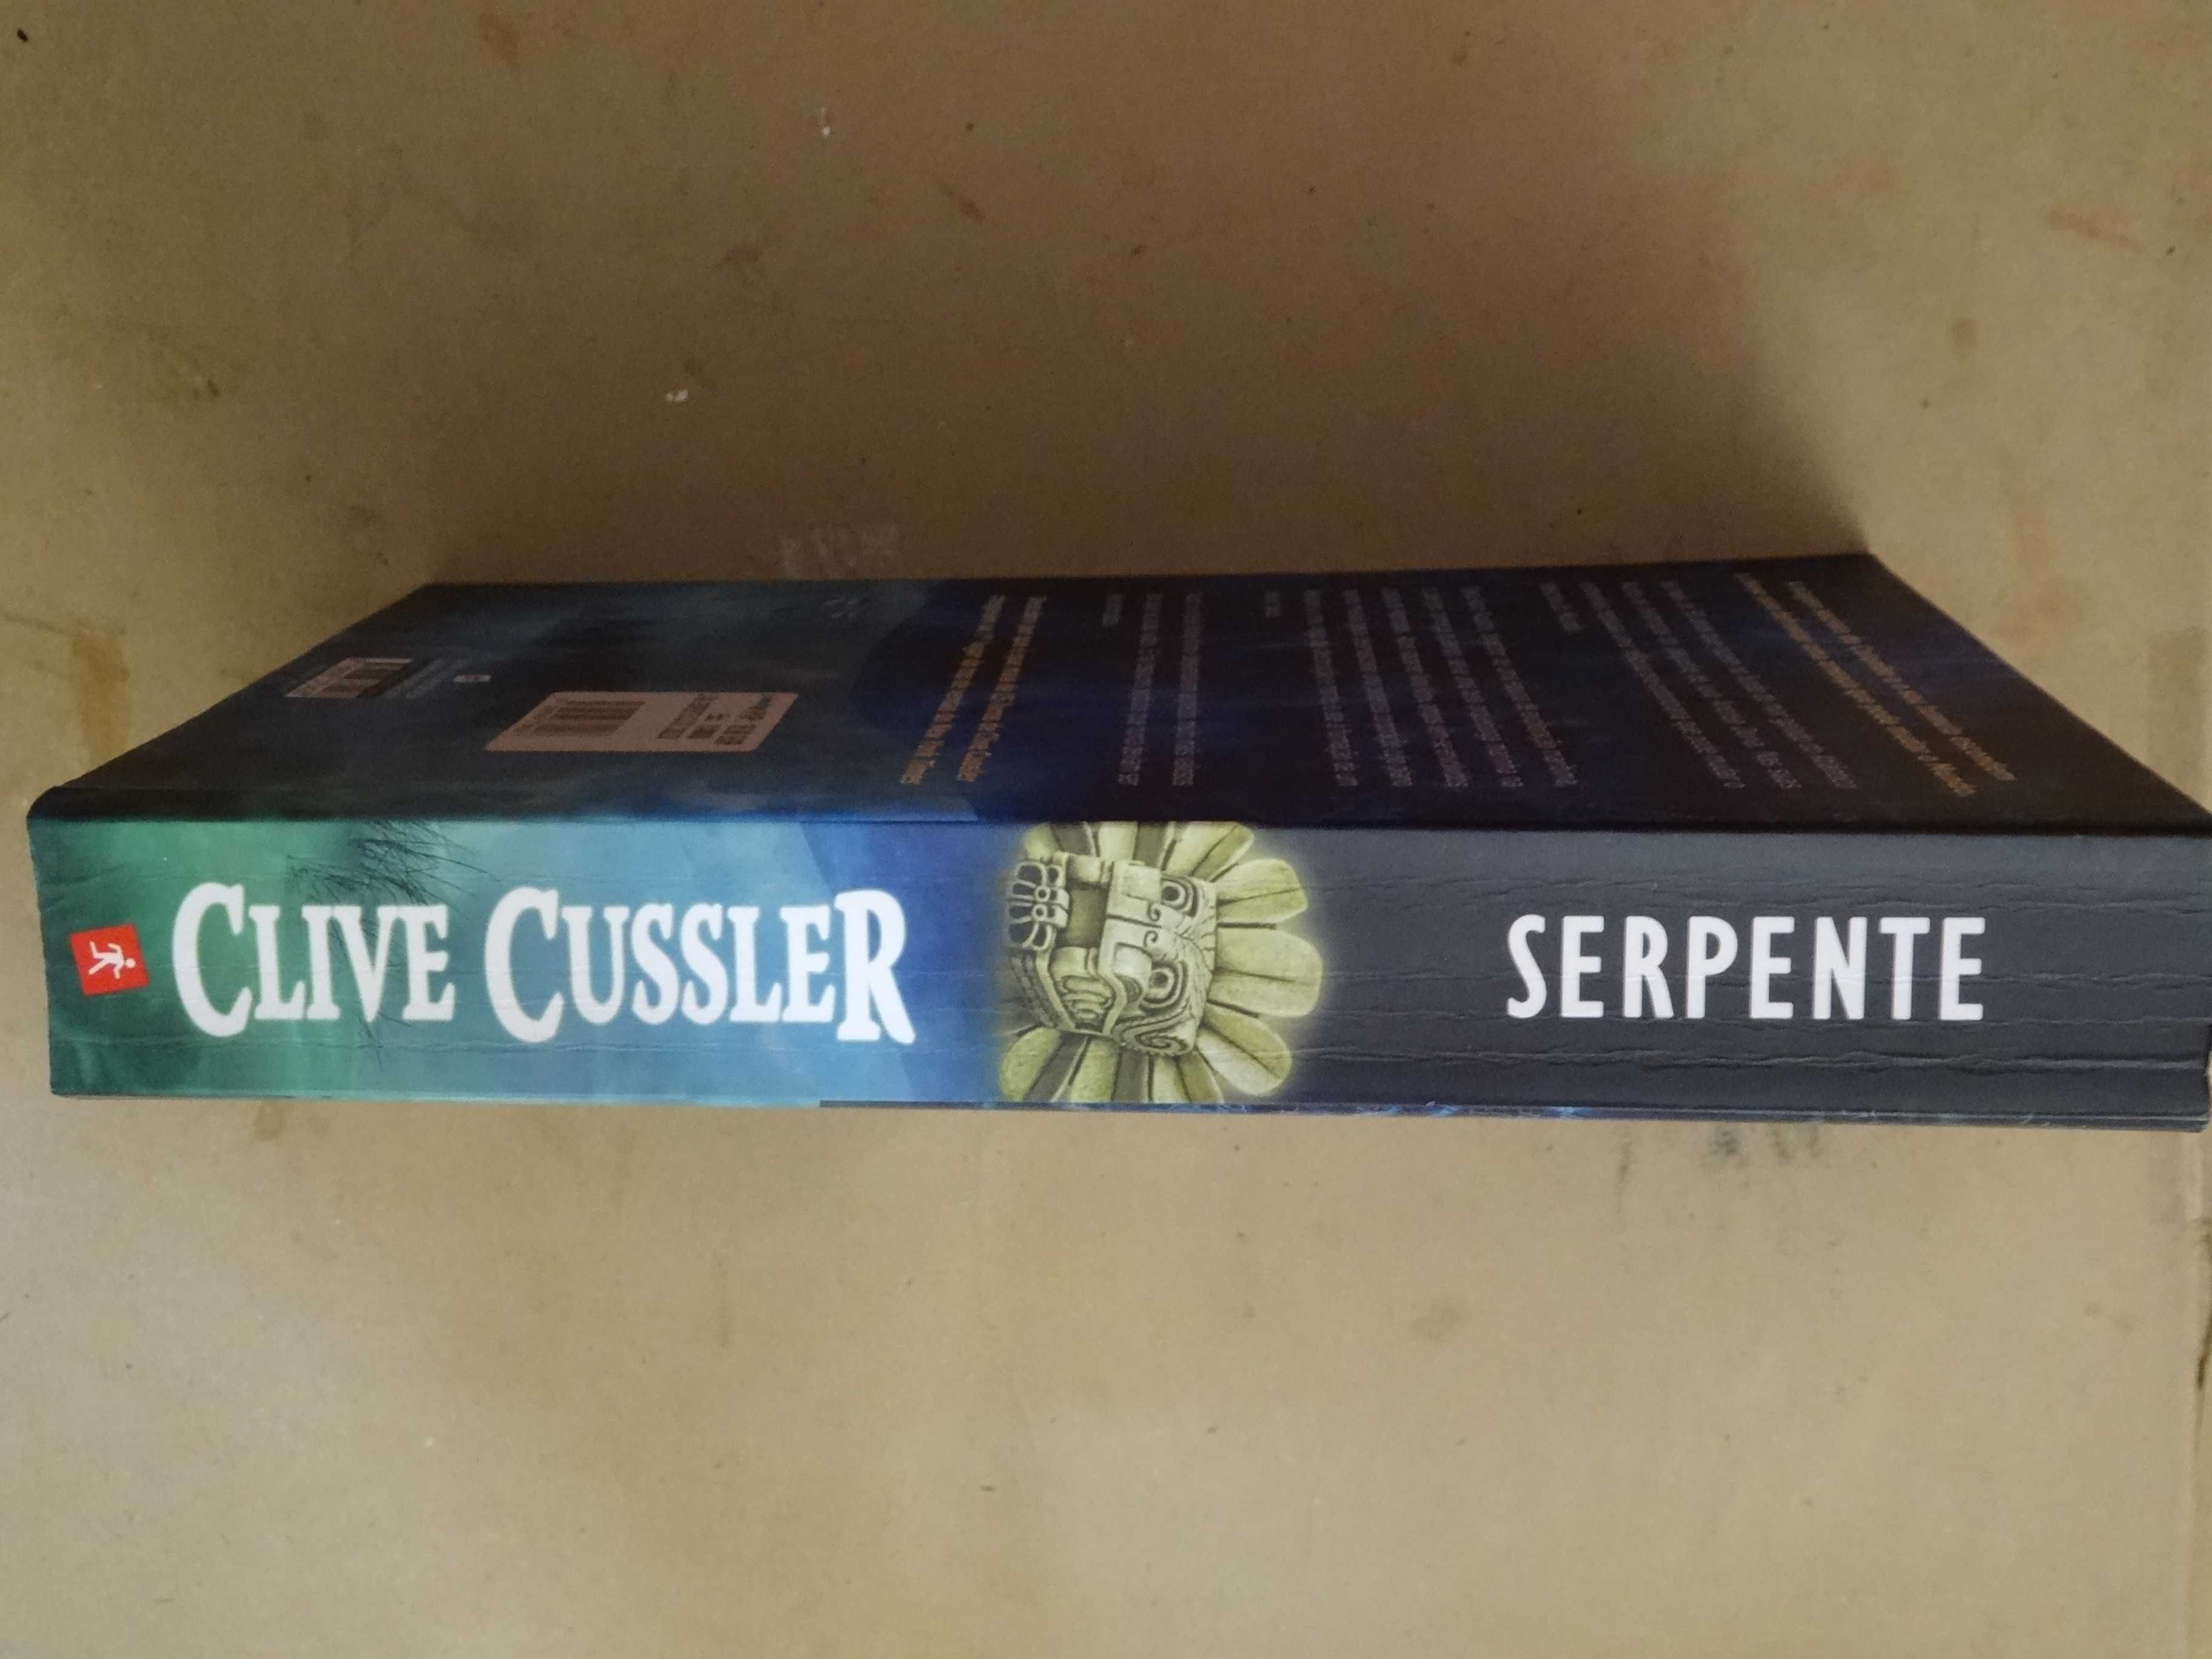 Serpente de Clive Cussler e Paul Kemprecos - 1ª Edição